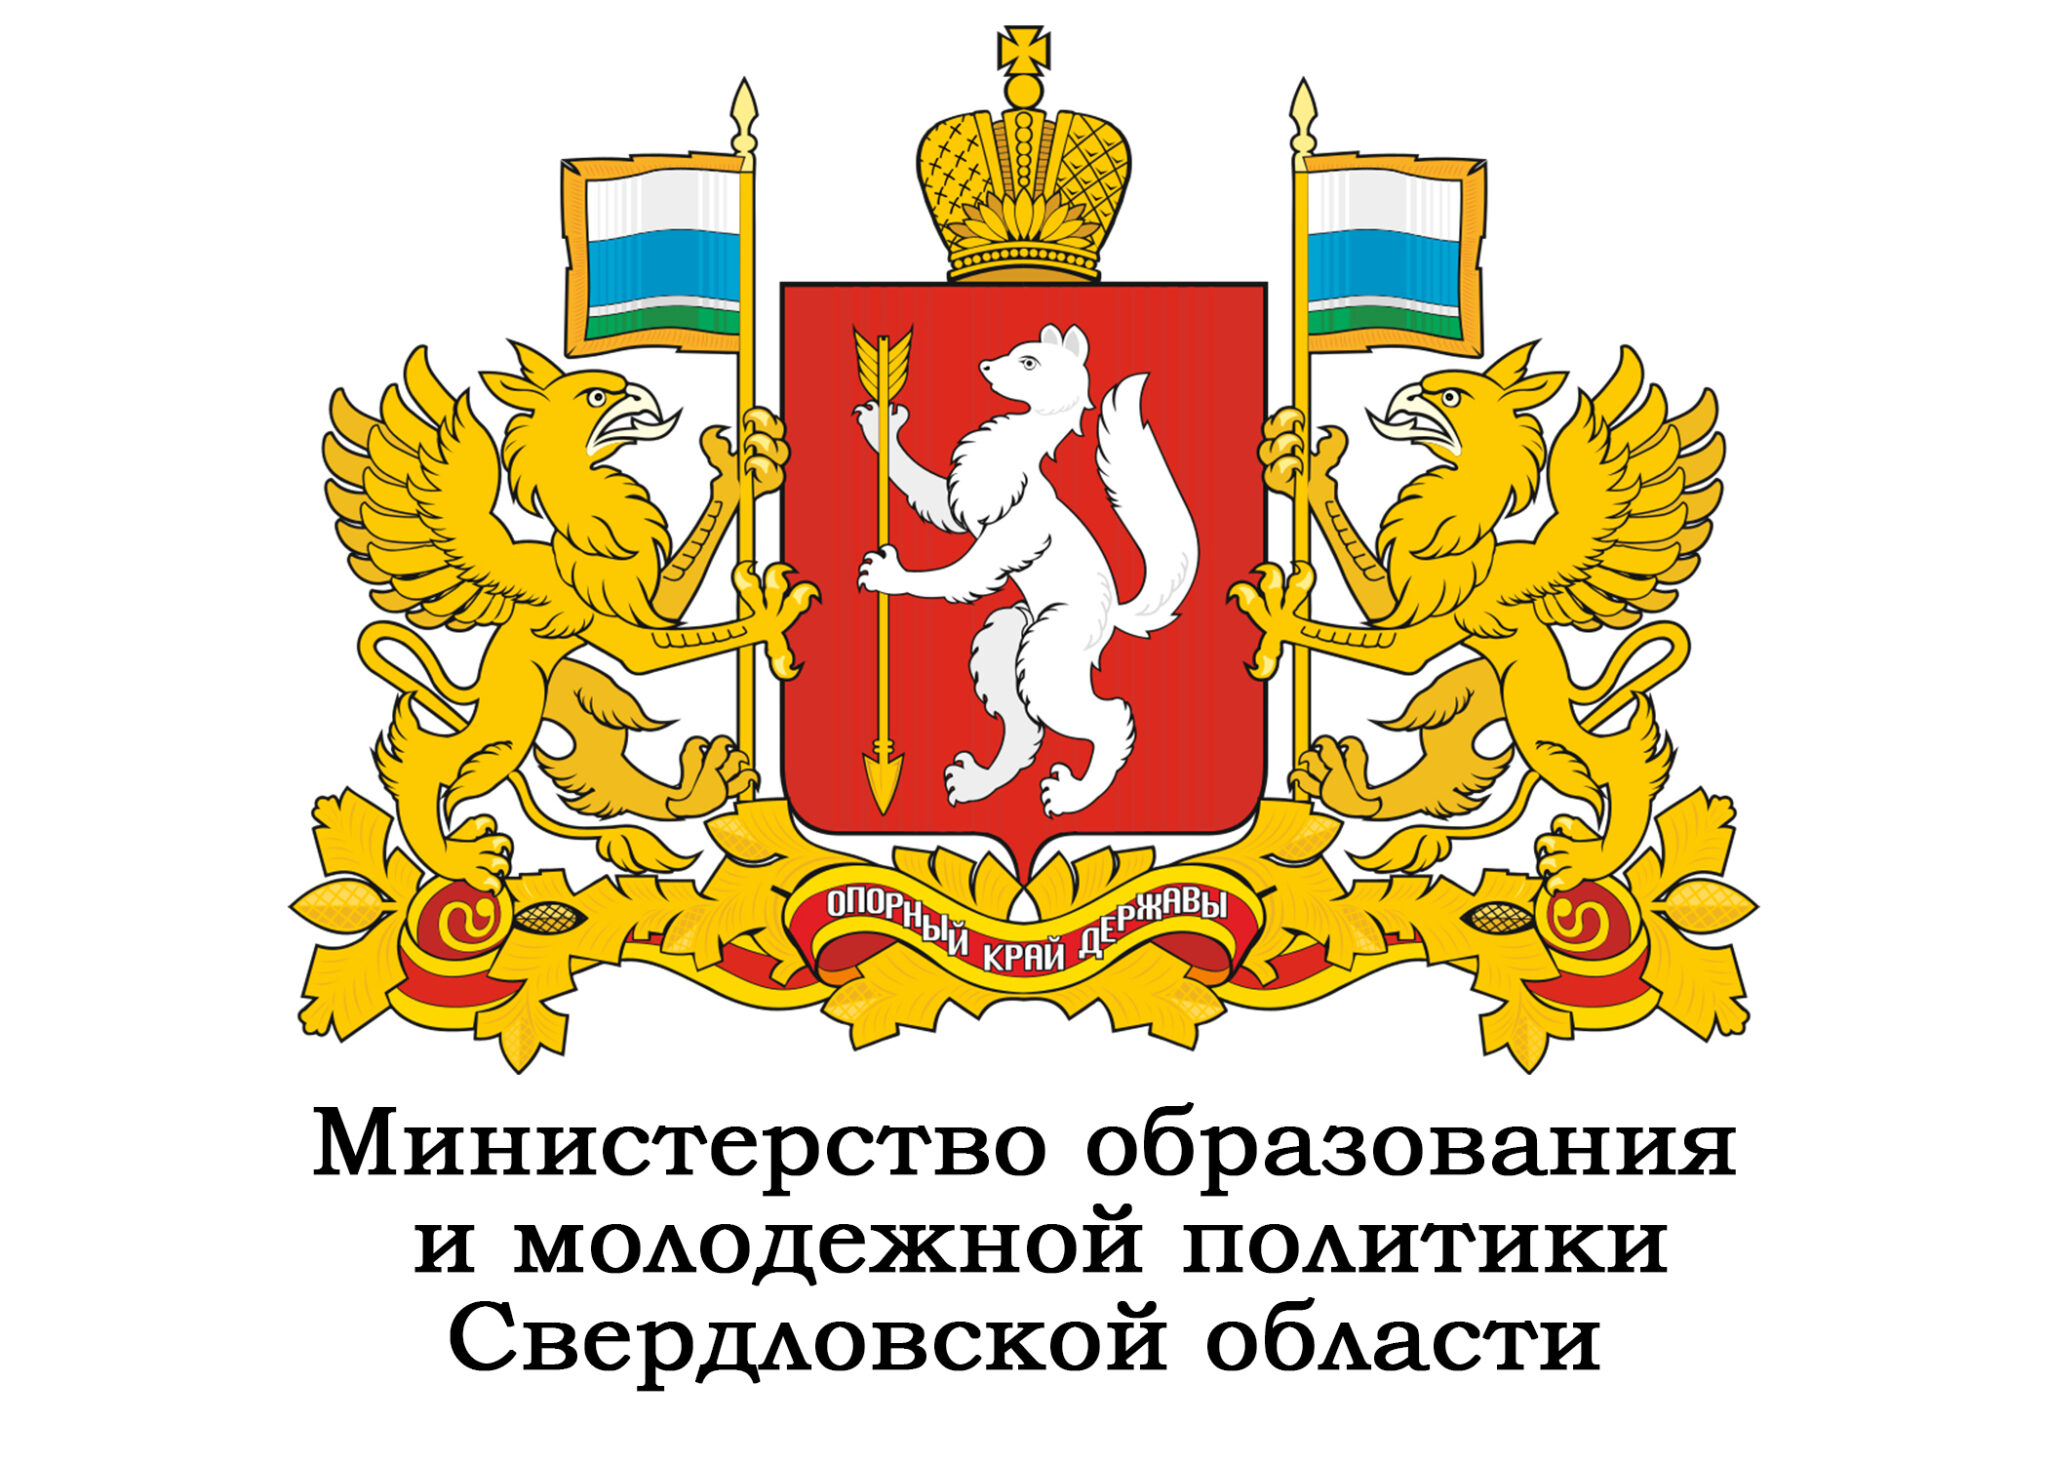 Министерство образования свердловской области 